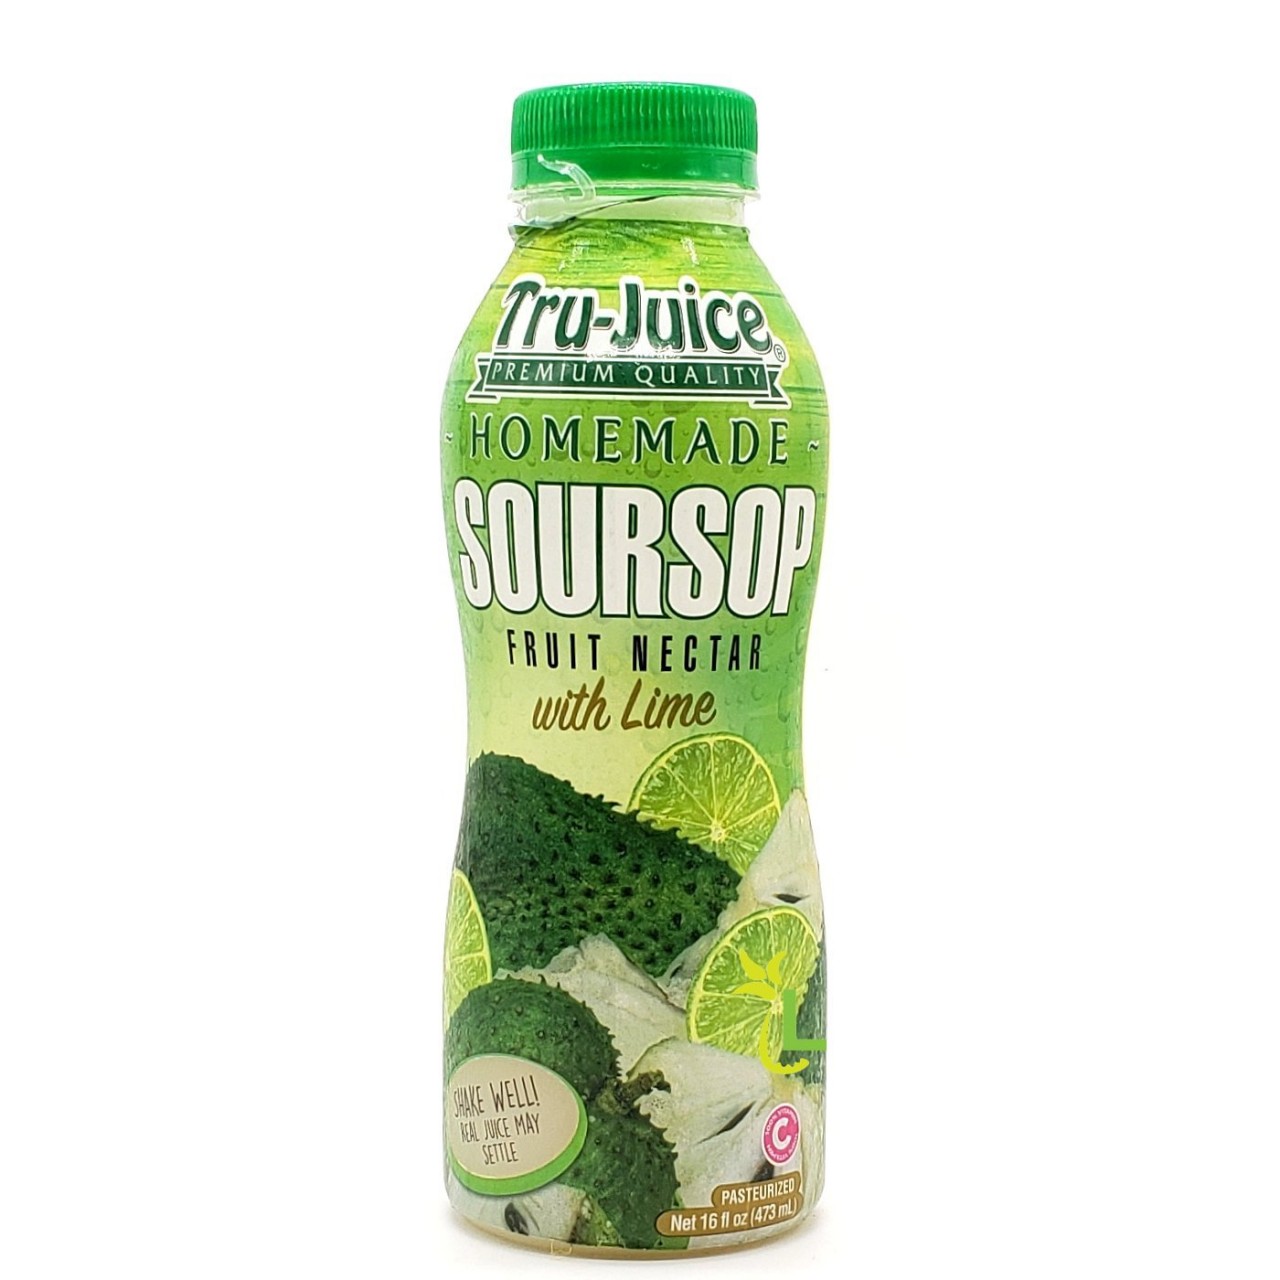 Pre-Order A Bottle of Natural Tru-Juice Drink Online